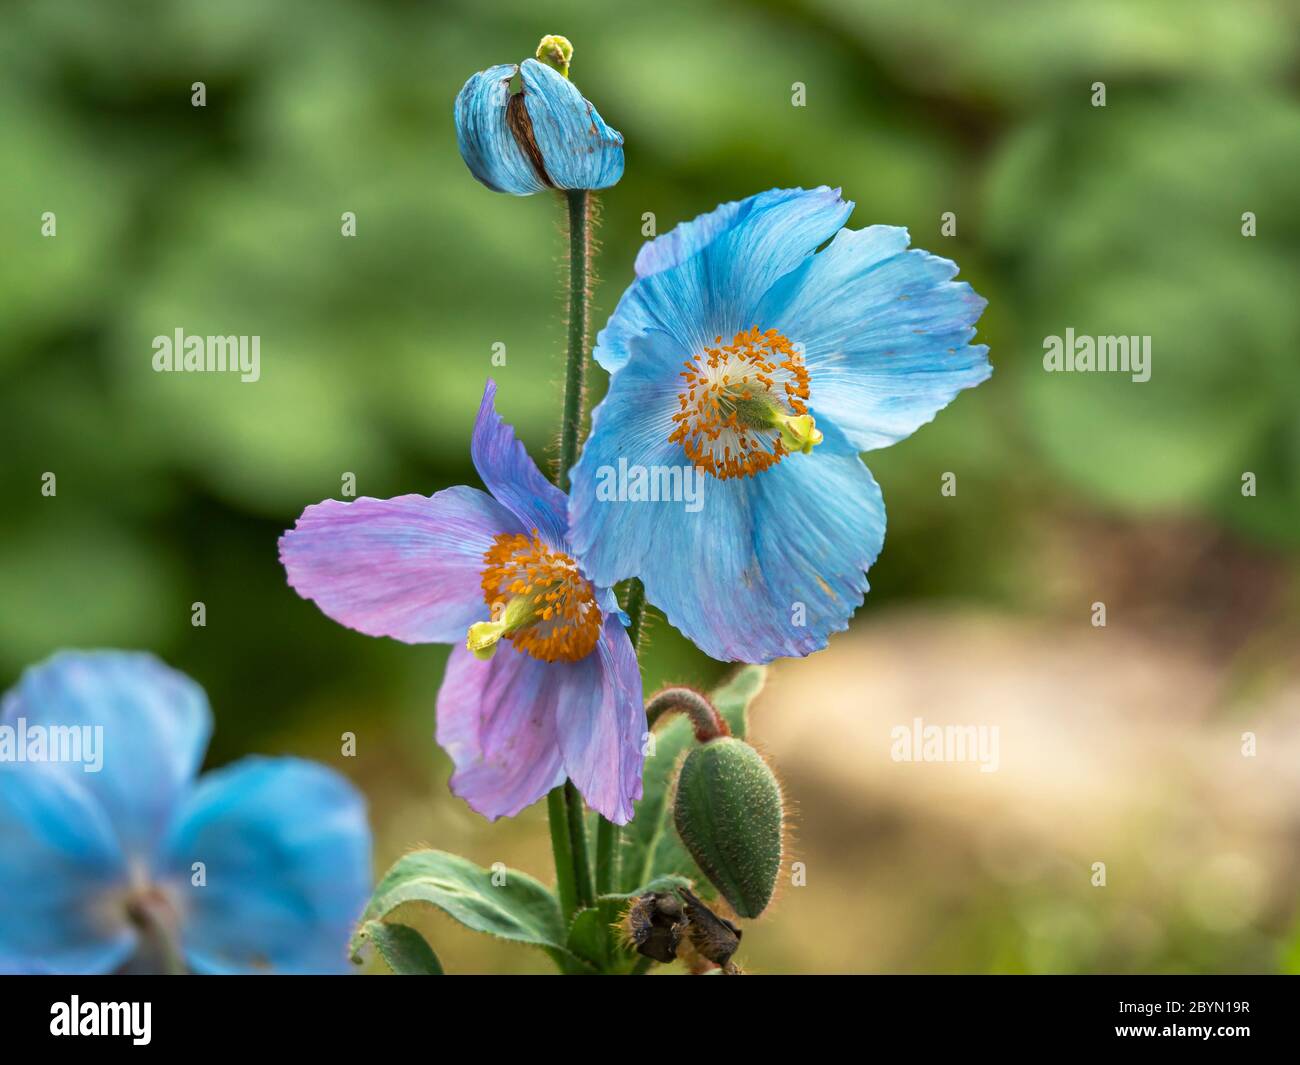 Gros plan de la belle couleur bleue et pourpre de pavot himalayan, Meconopsis, fleurs et bourgeon dans un jardin Banque D'Images